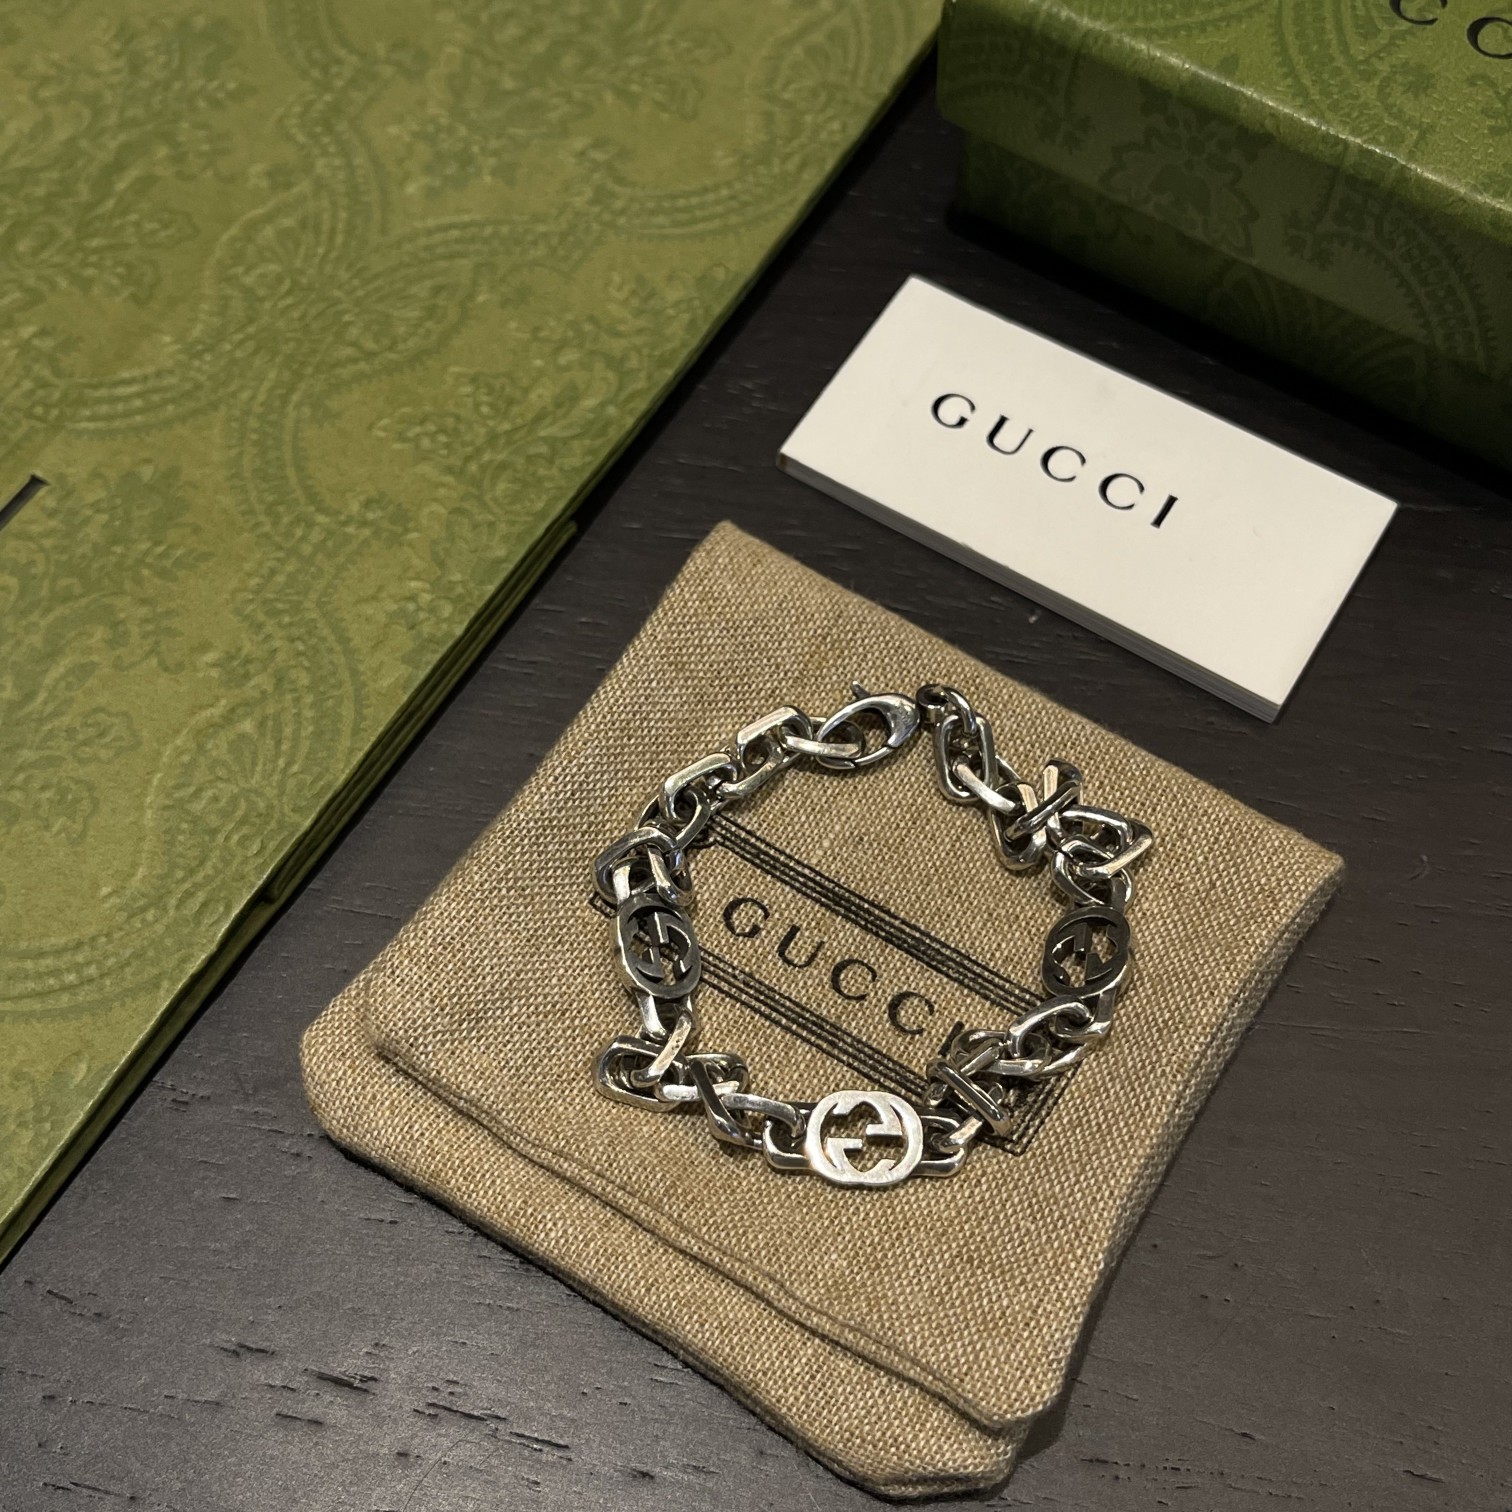 Gucci Silver Bracelet With Interlocking G - DesignerGu